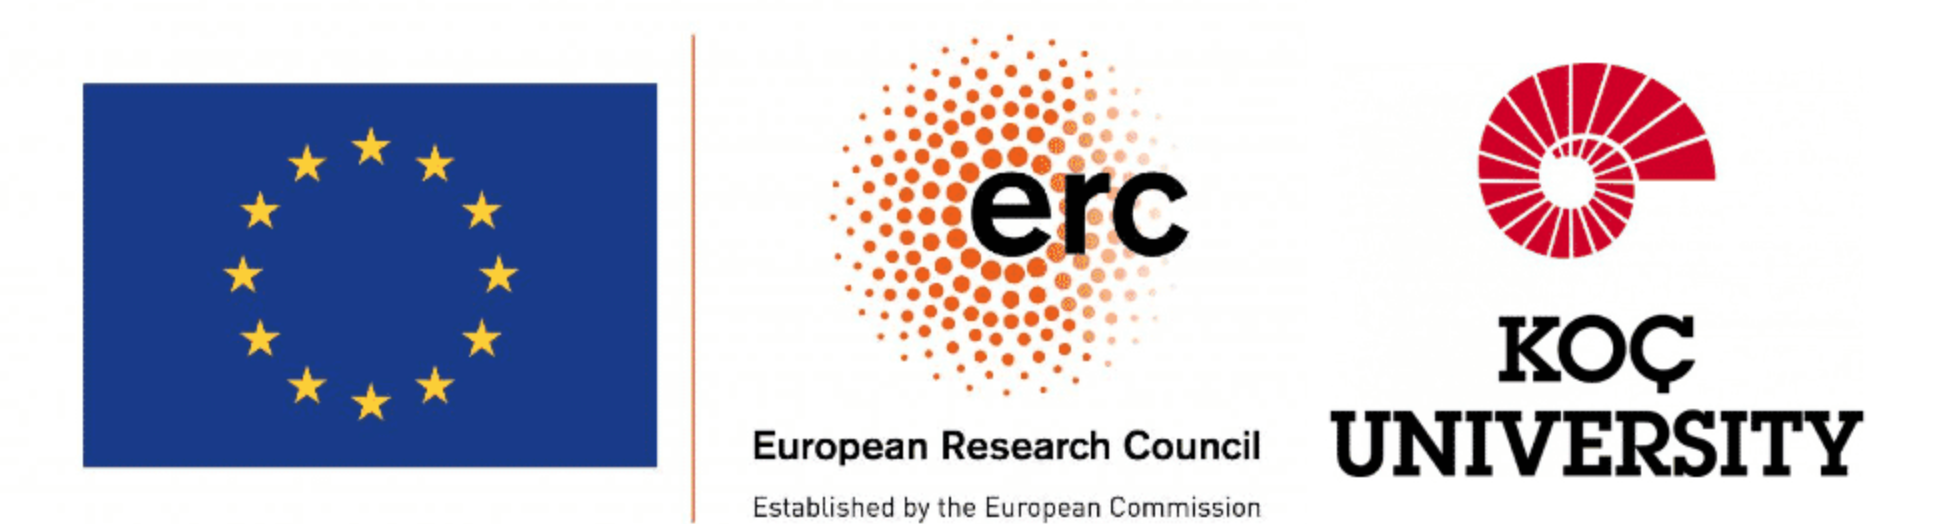 ERC_KU_logos_together